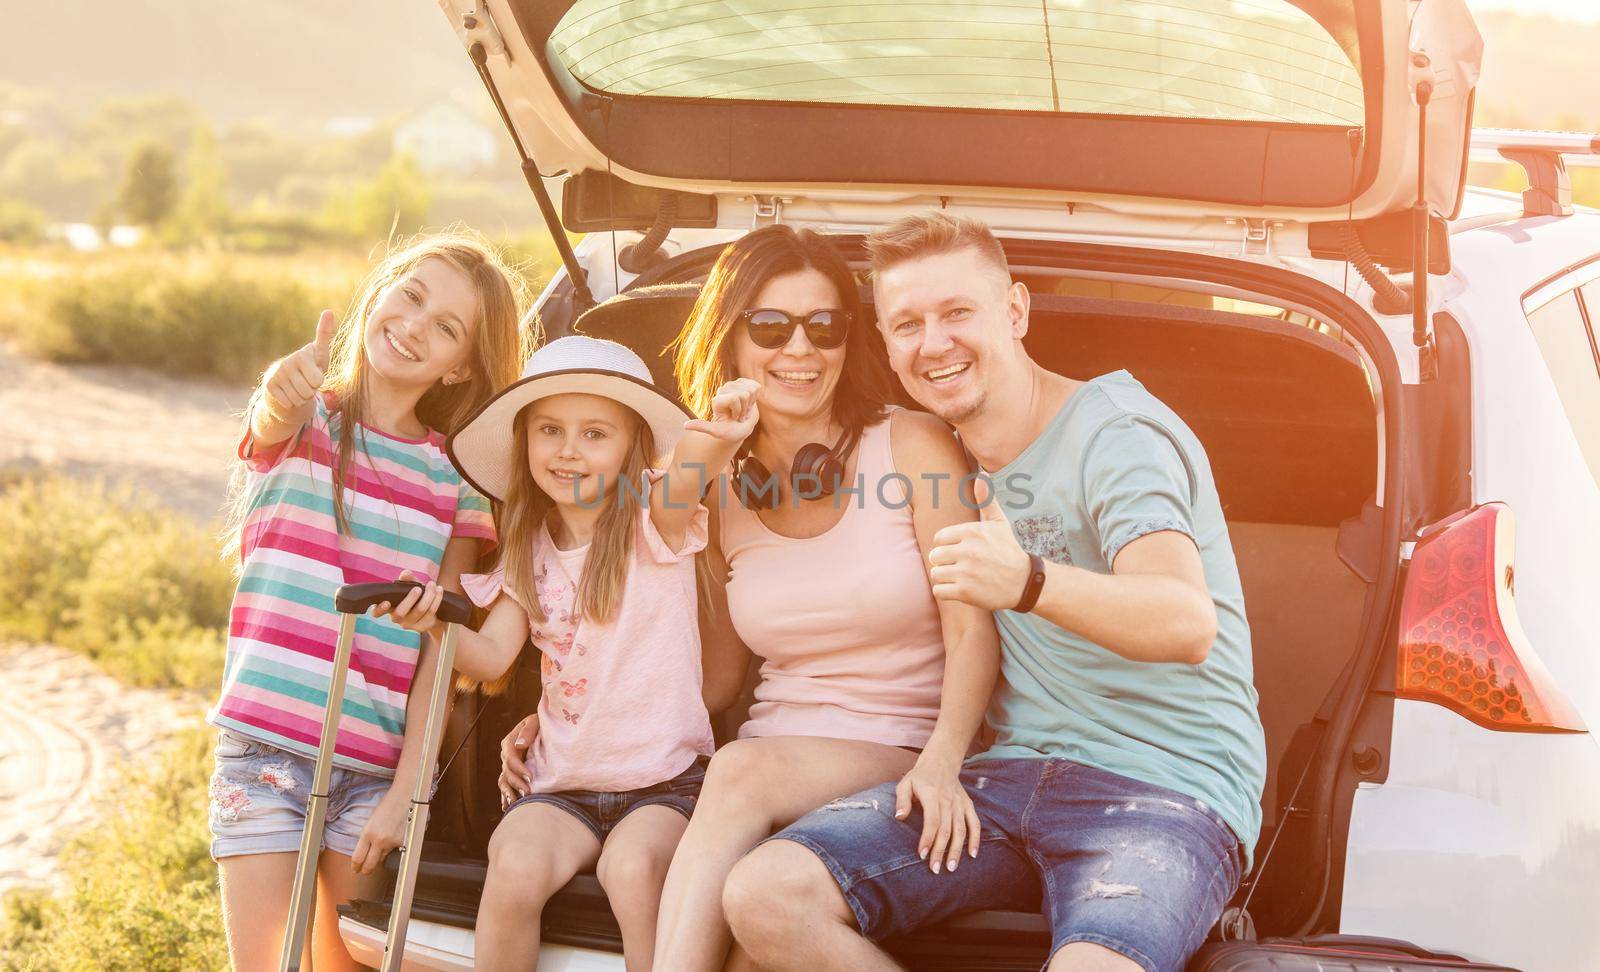 Family in the Car by GekaSkr